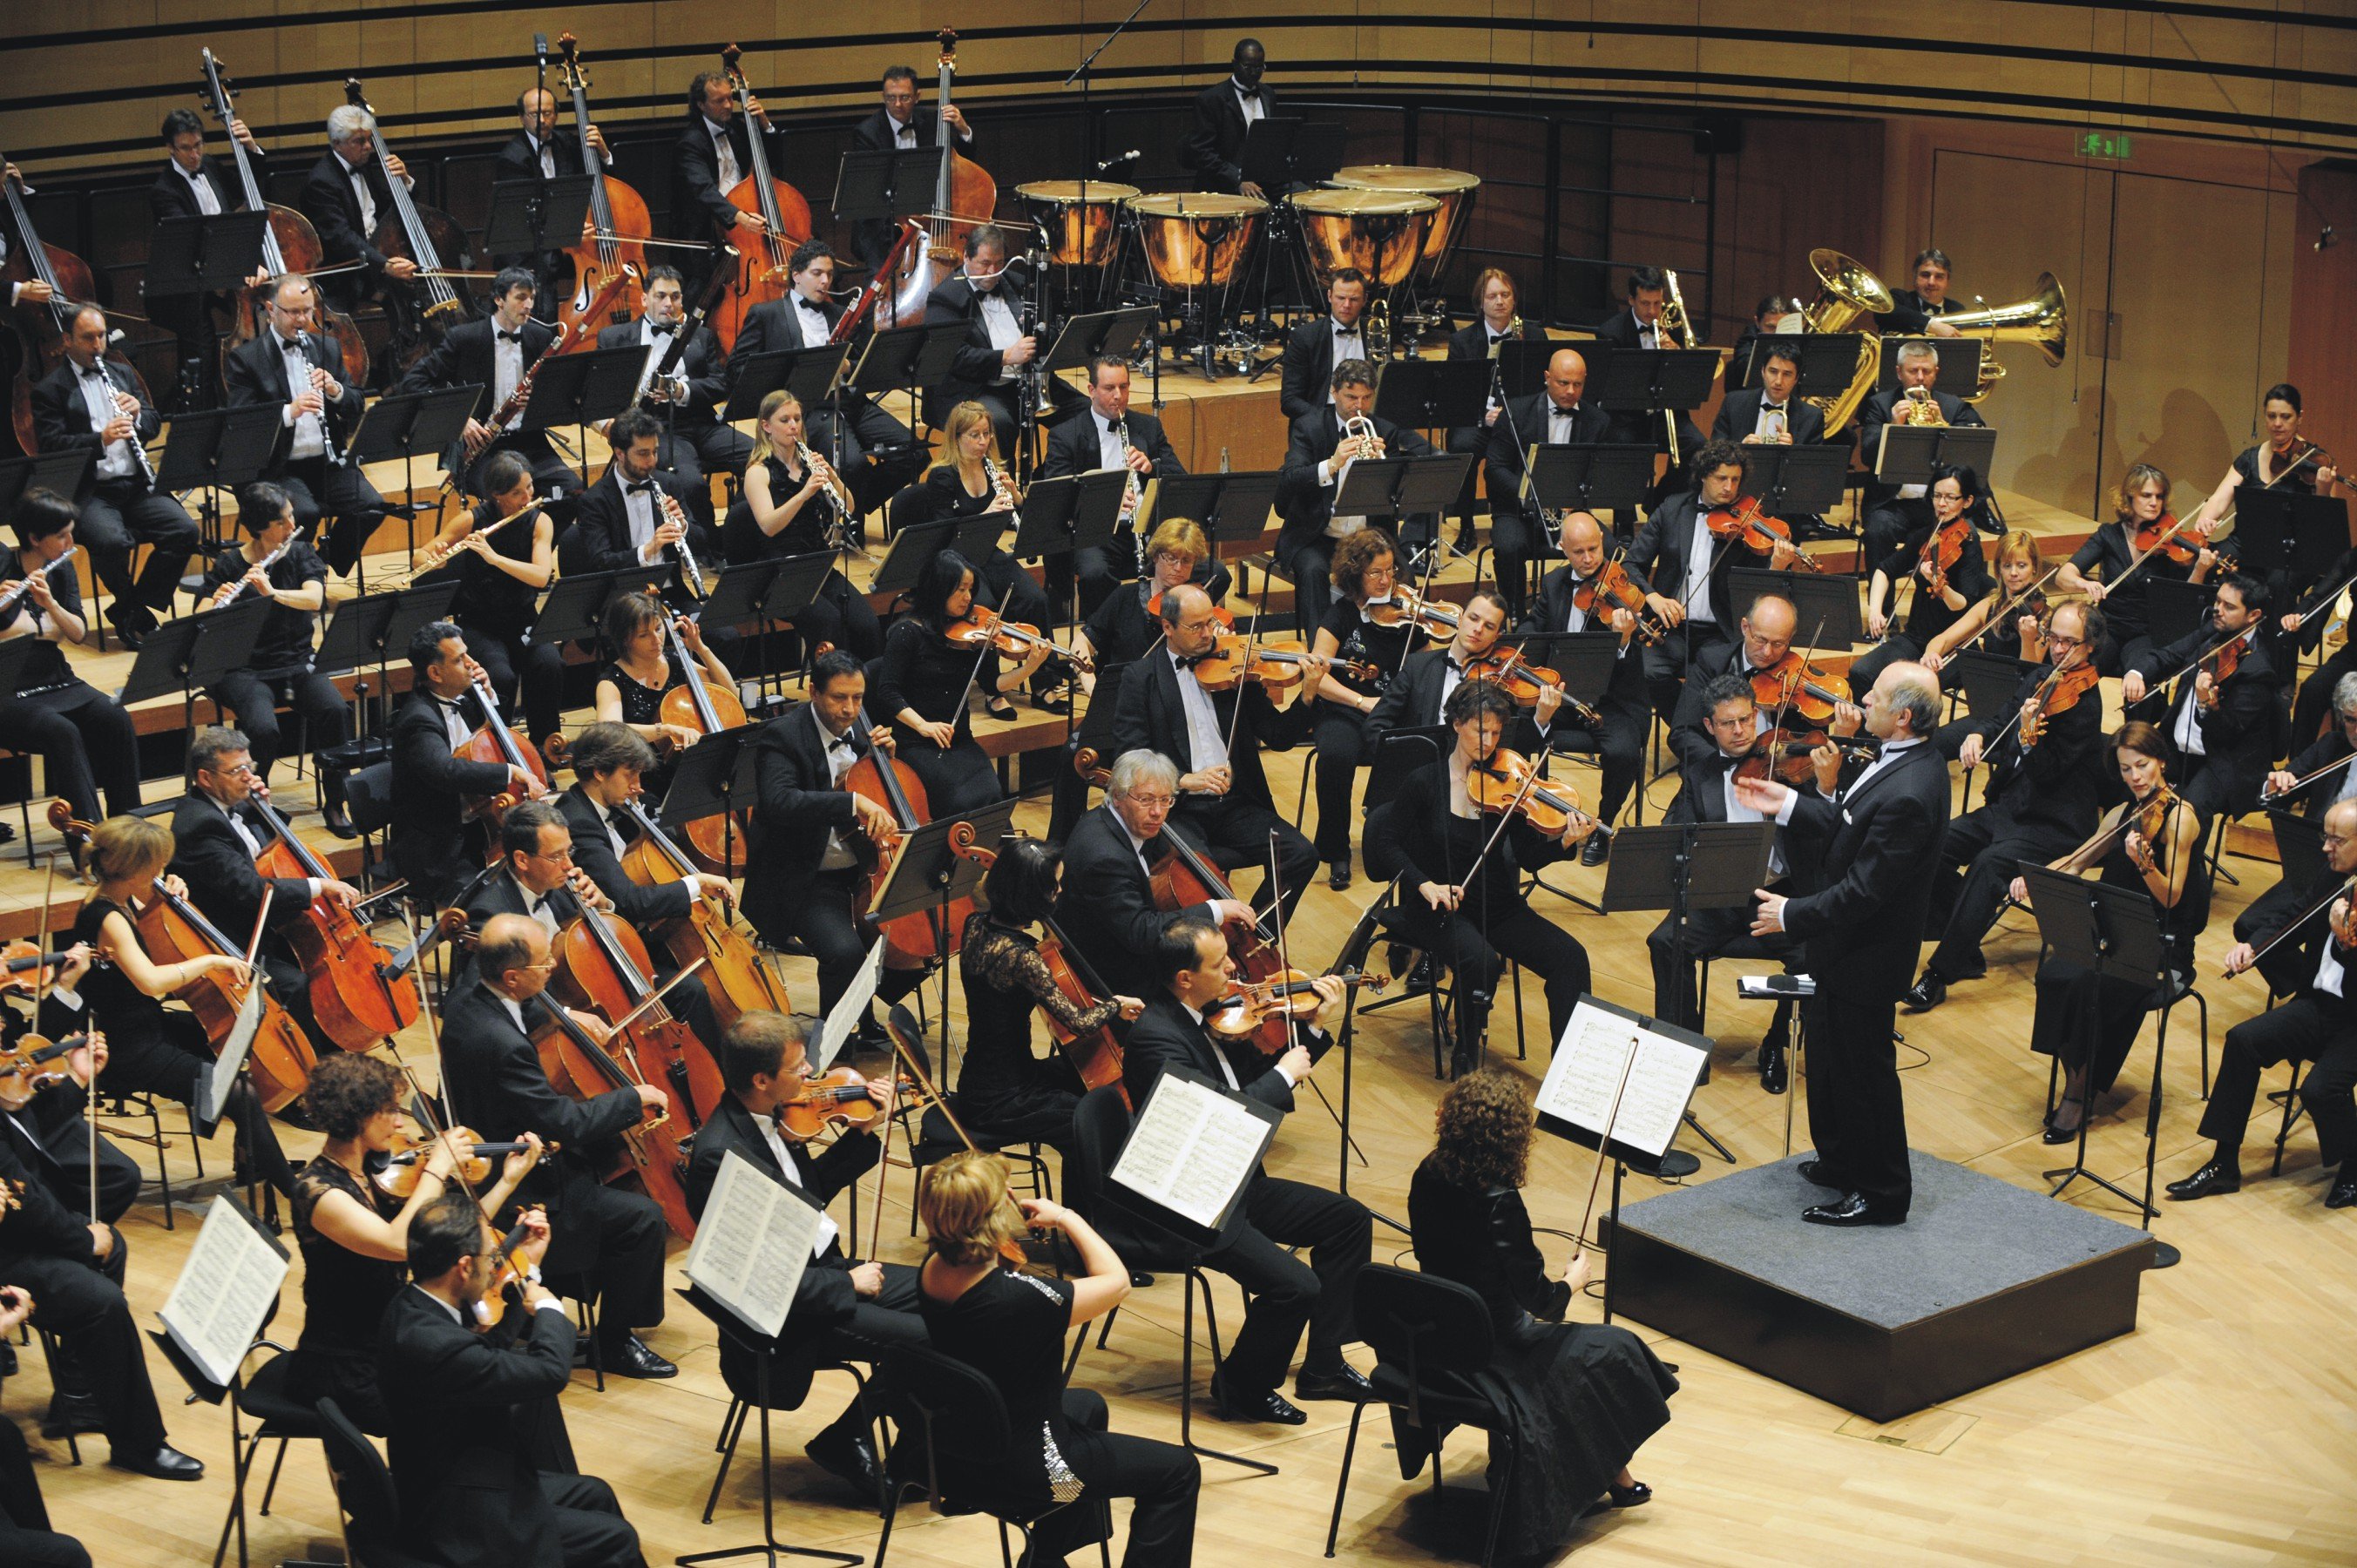 Ορχήστρα του Φεστιβάλ της Βουδαπέστης – Ιβάν Φίσερ  Σολίστ ο Δημήτρης Σγούρος  και ο Τόμας Τσέετμαϊρ